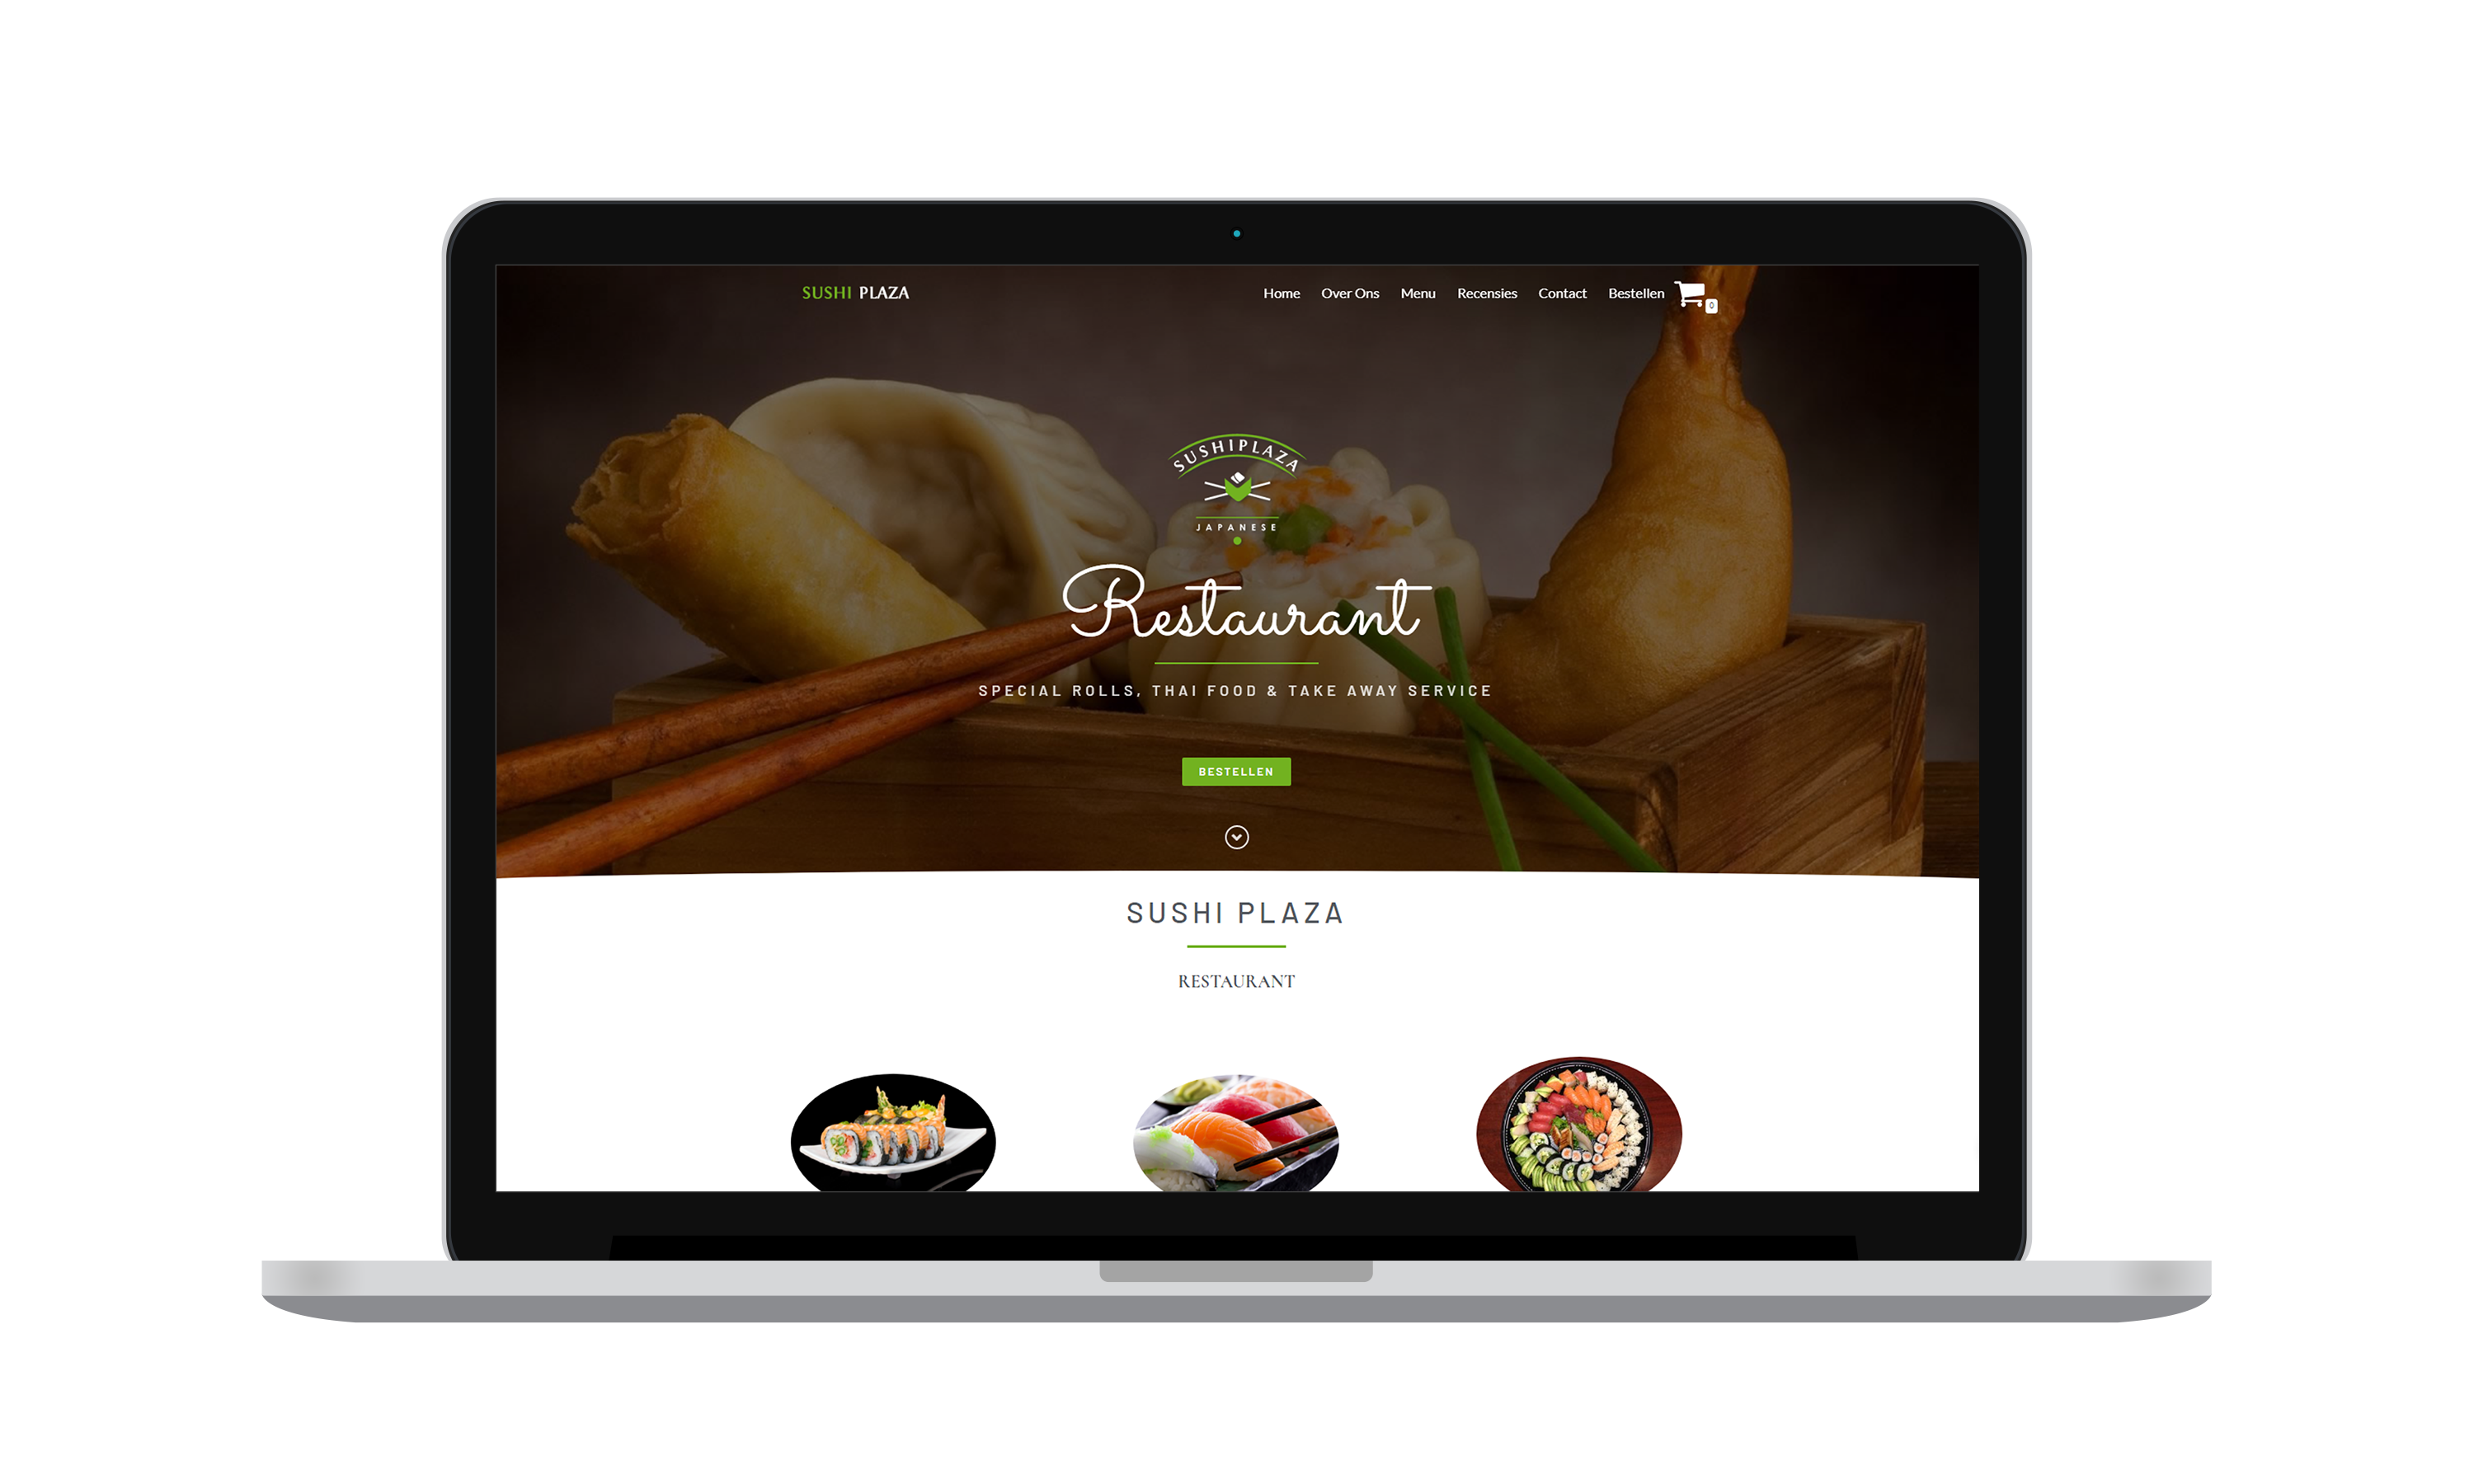 sushi plaza website